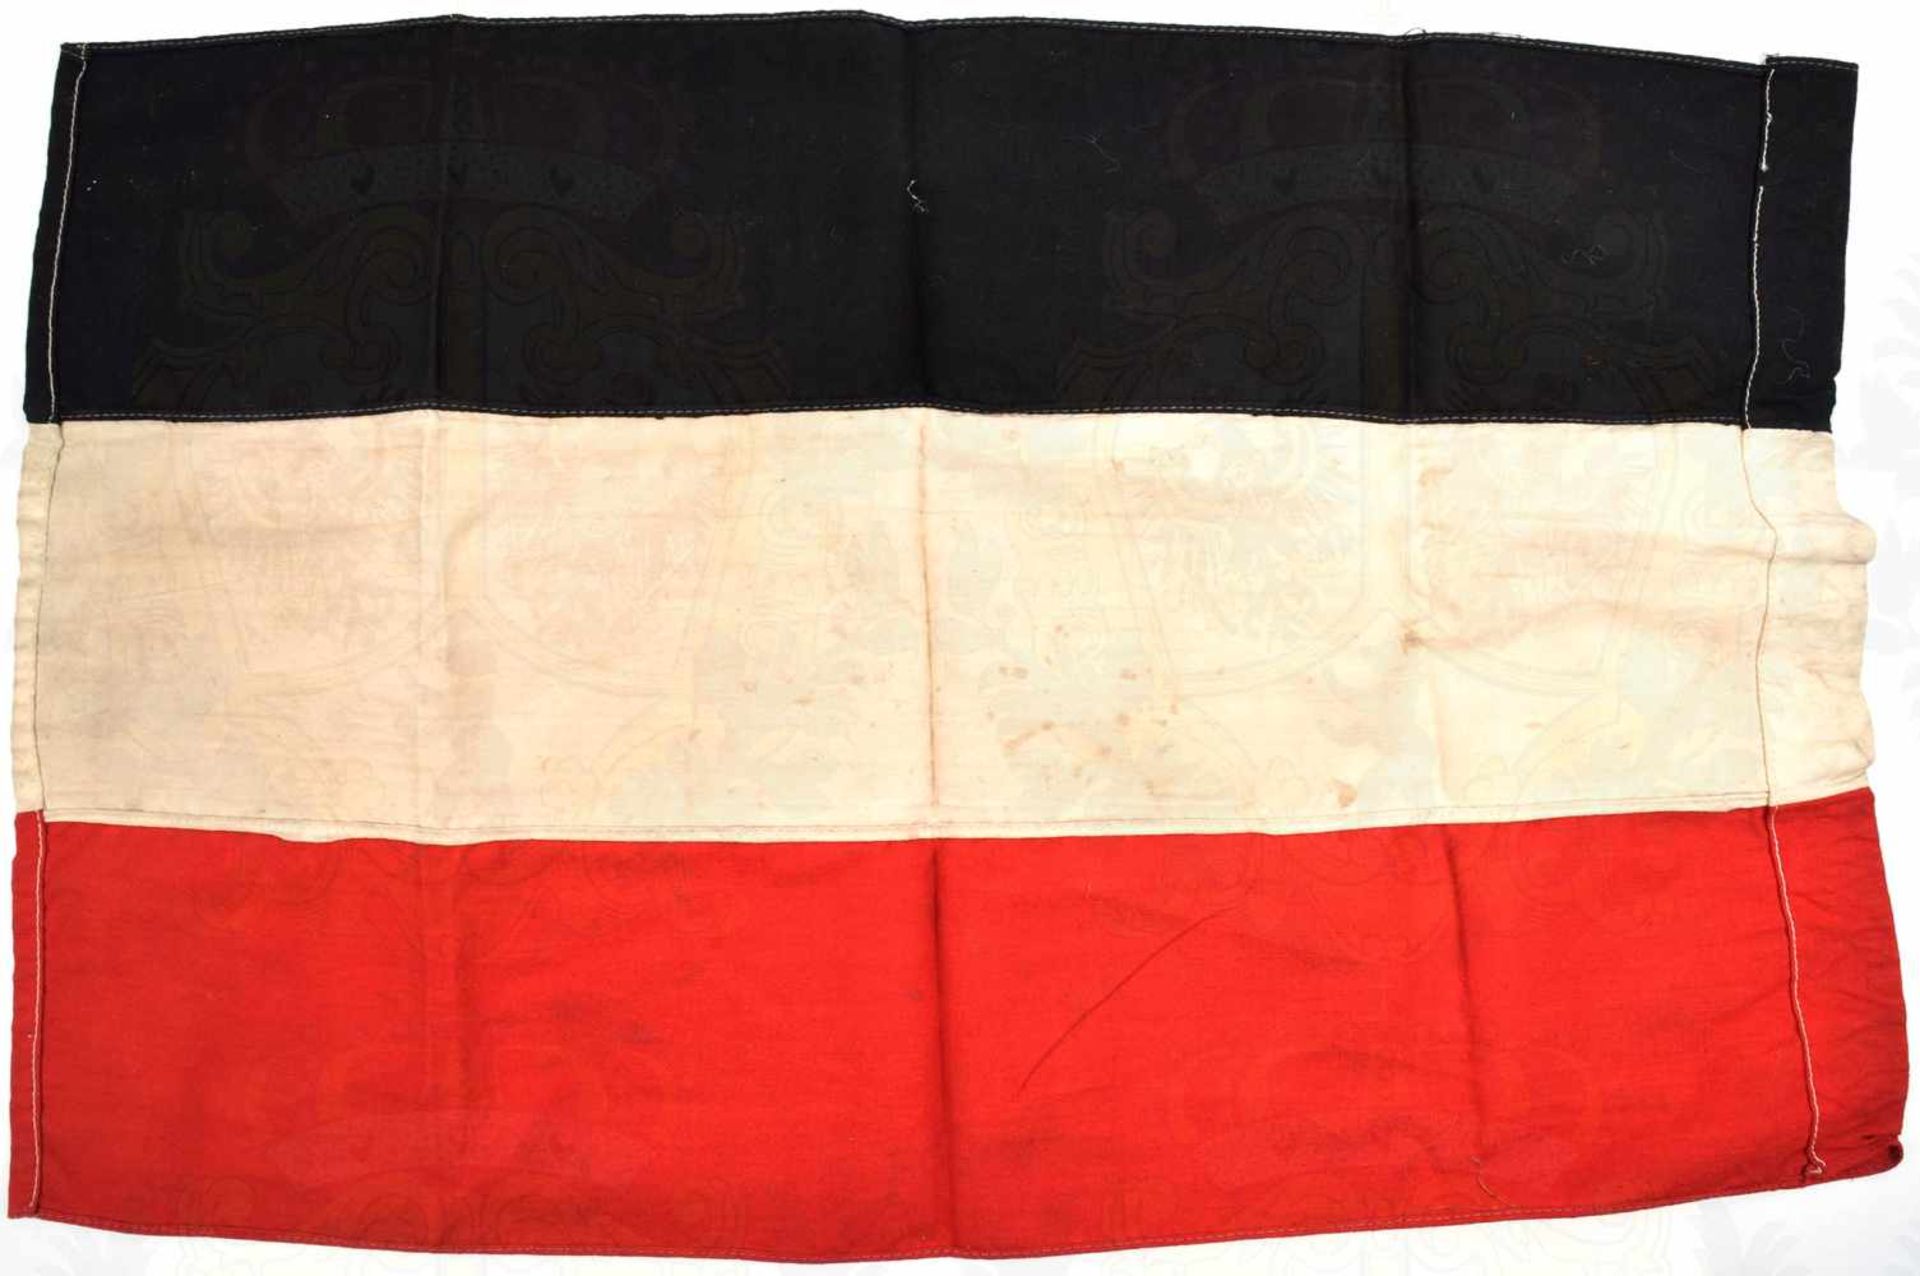 NATIONALFAHNE, schwarz/weiß/rotes Leinen, aus einzelnen Bahnen zusammengenäht, Liek m. Durchzug, - Bild 2 aus 2